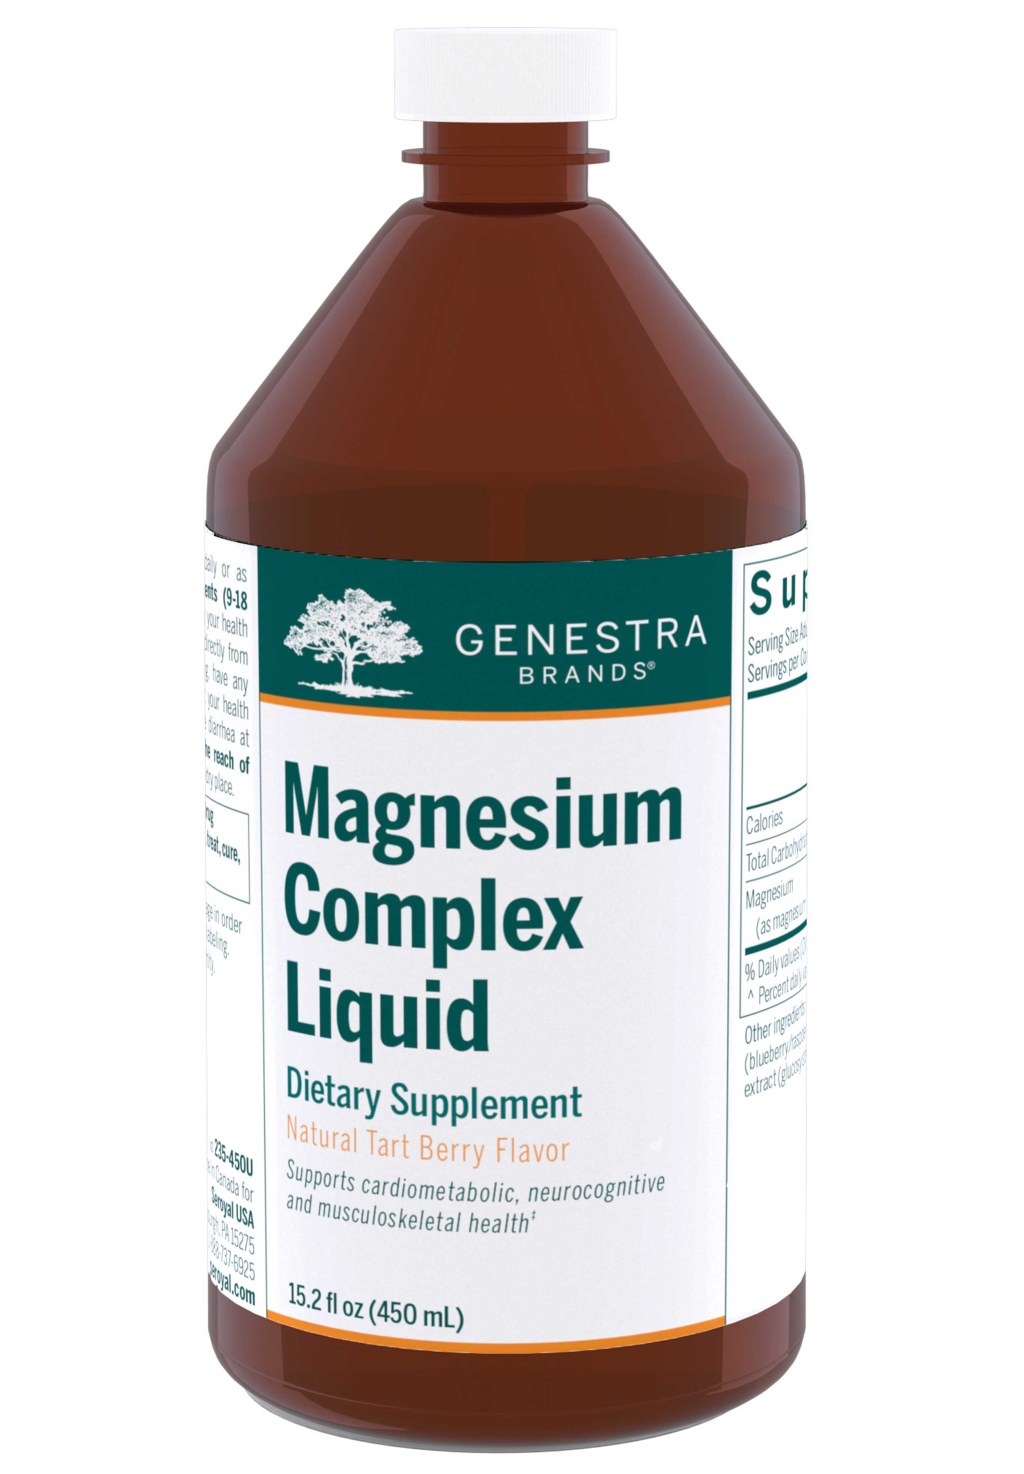 Picture of: Genestra Brands Magnesium Complex Liquid